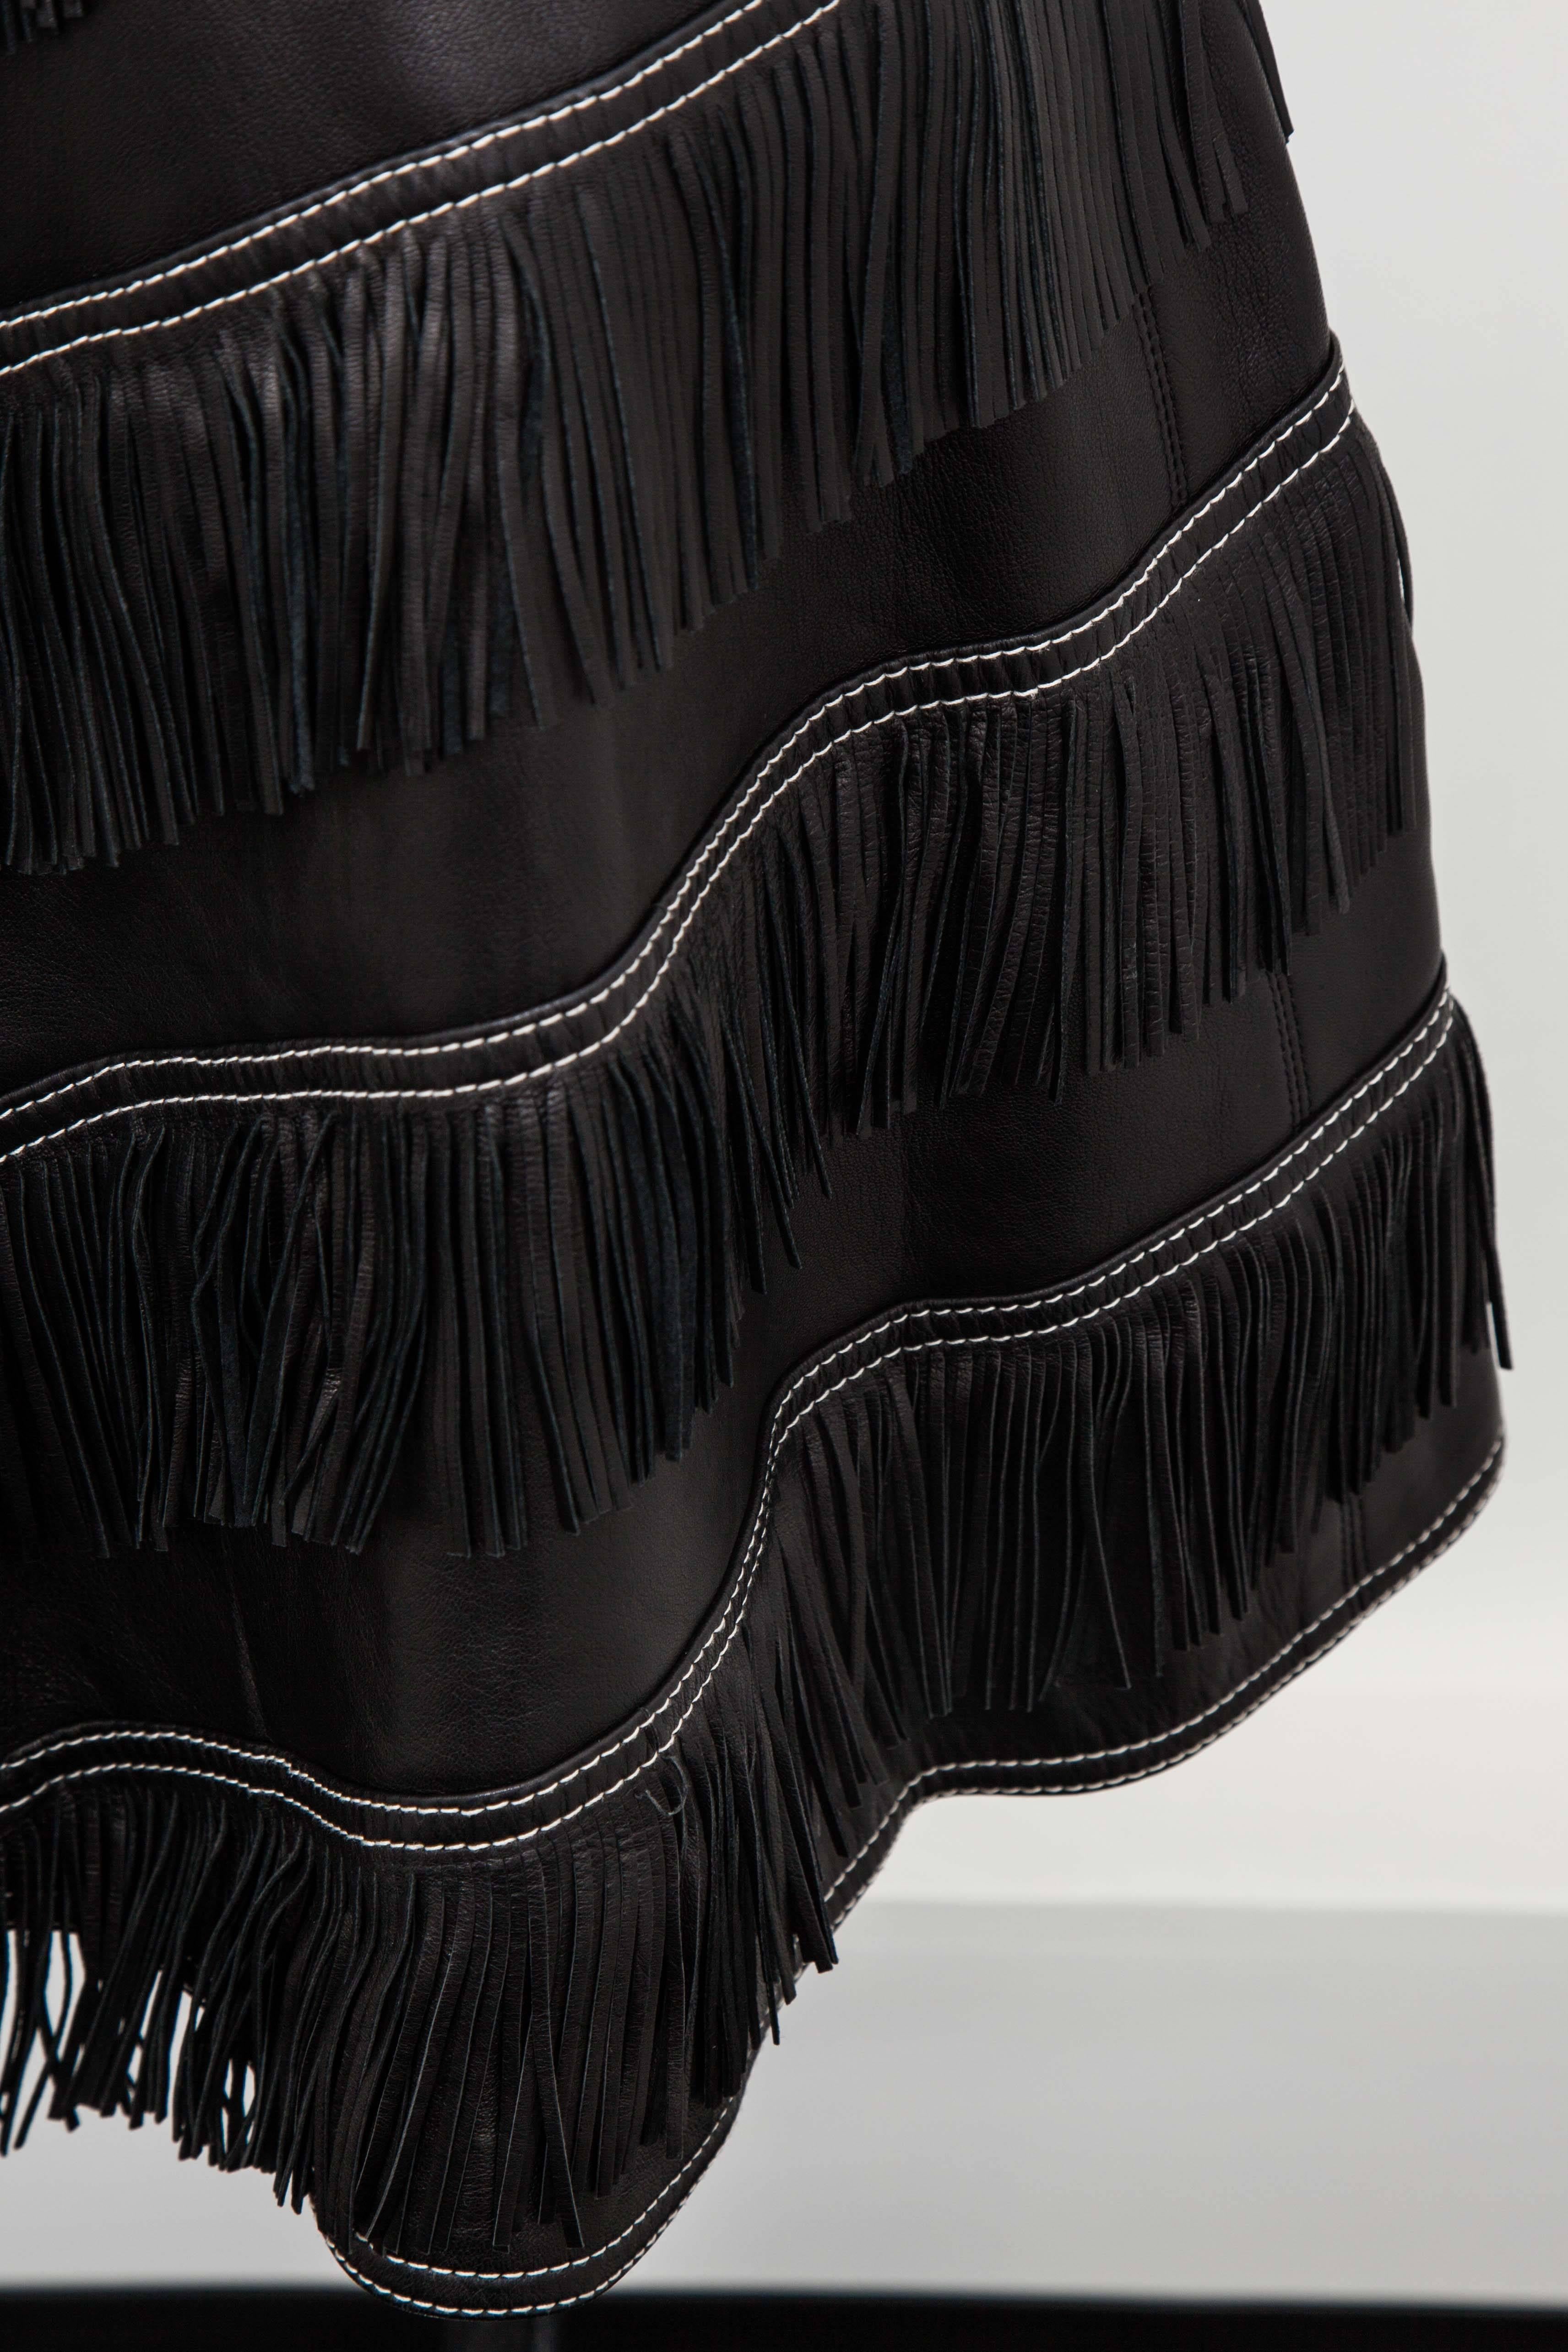 Gianni Versace Iconic 1992 Runway Black Leather Fringe Skirt 1